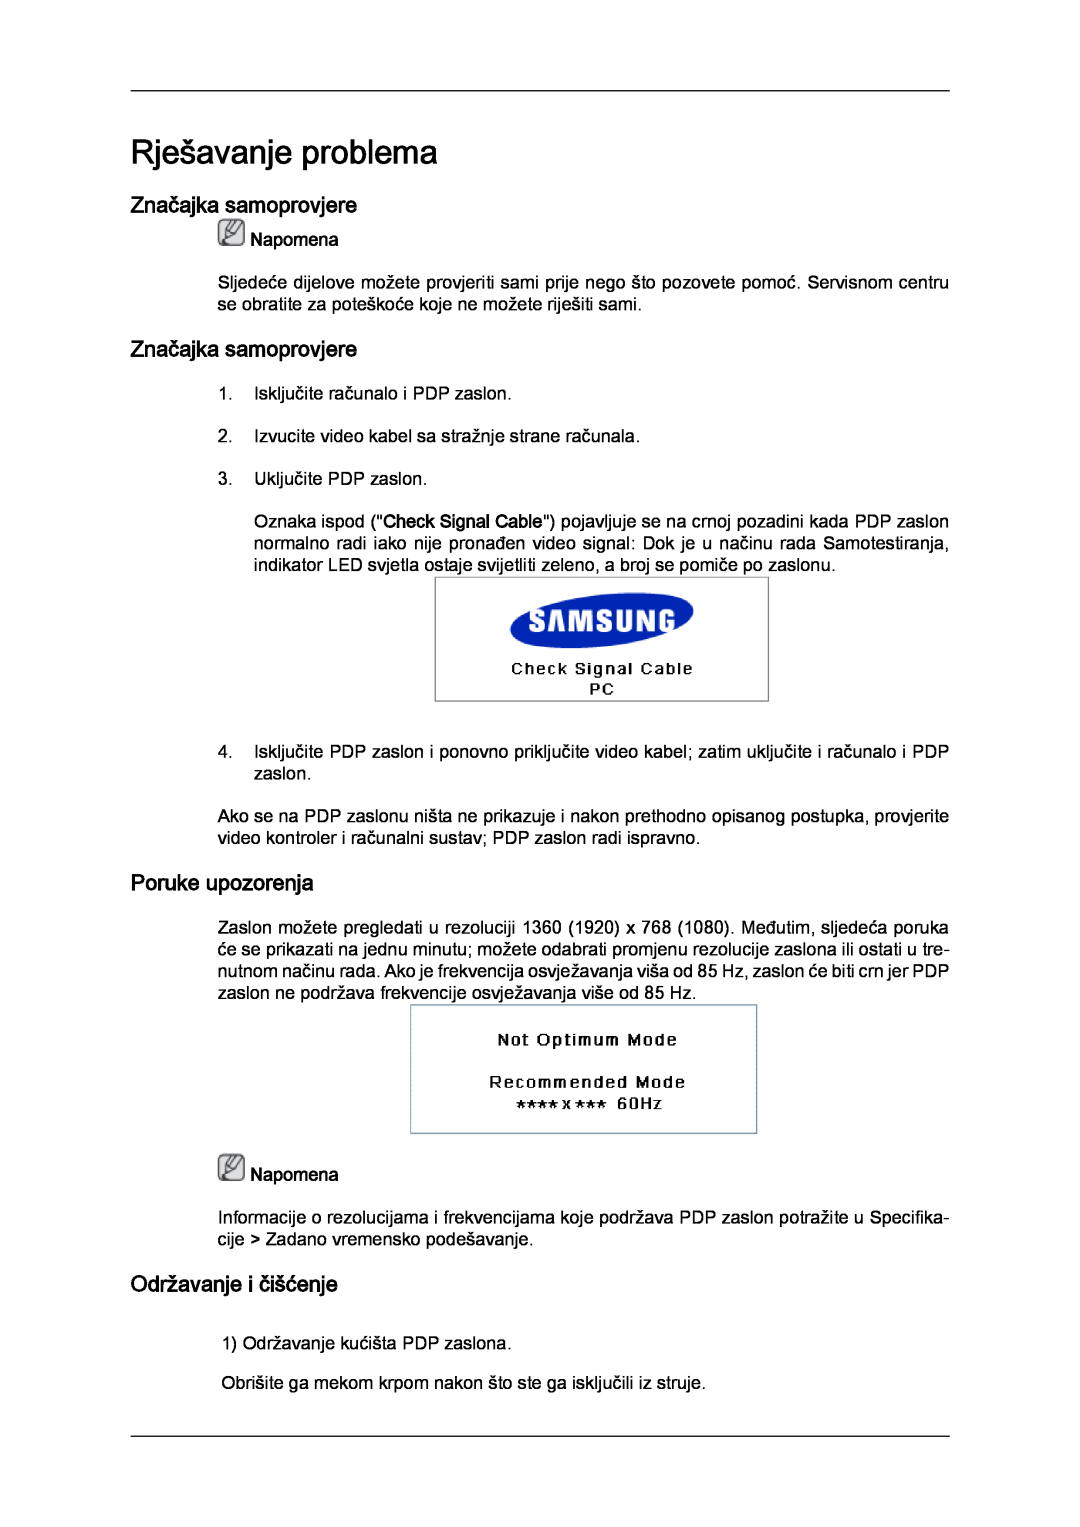 Samsung PH63KPFLBF/EN manual Rješavanje problema, Značajka samoprovjere, Poruke upozorenja, Održavanje i čišćenje, Napomena 